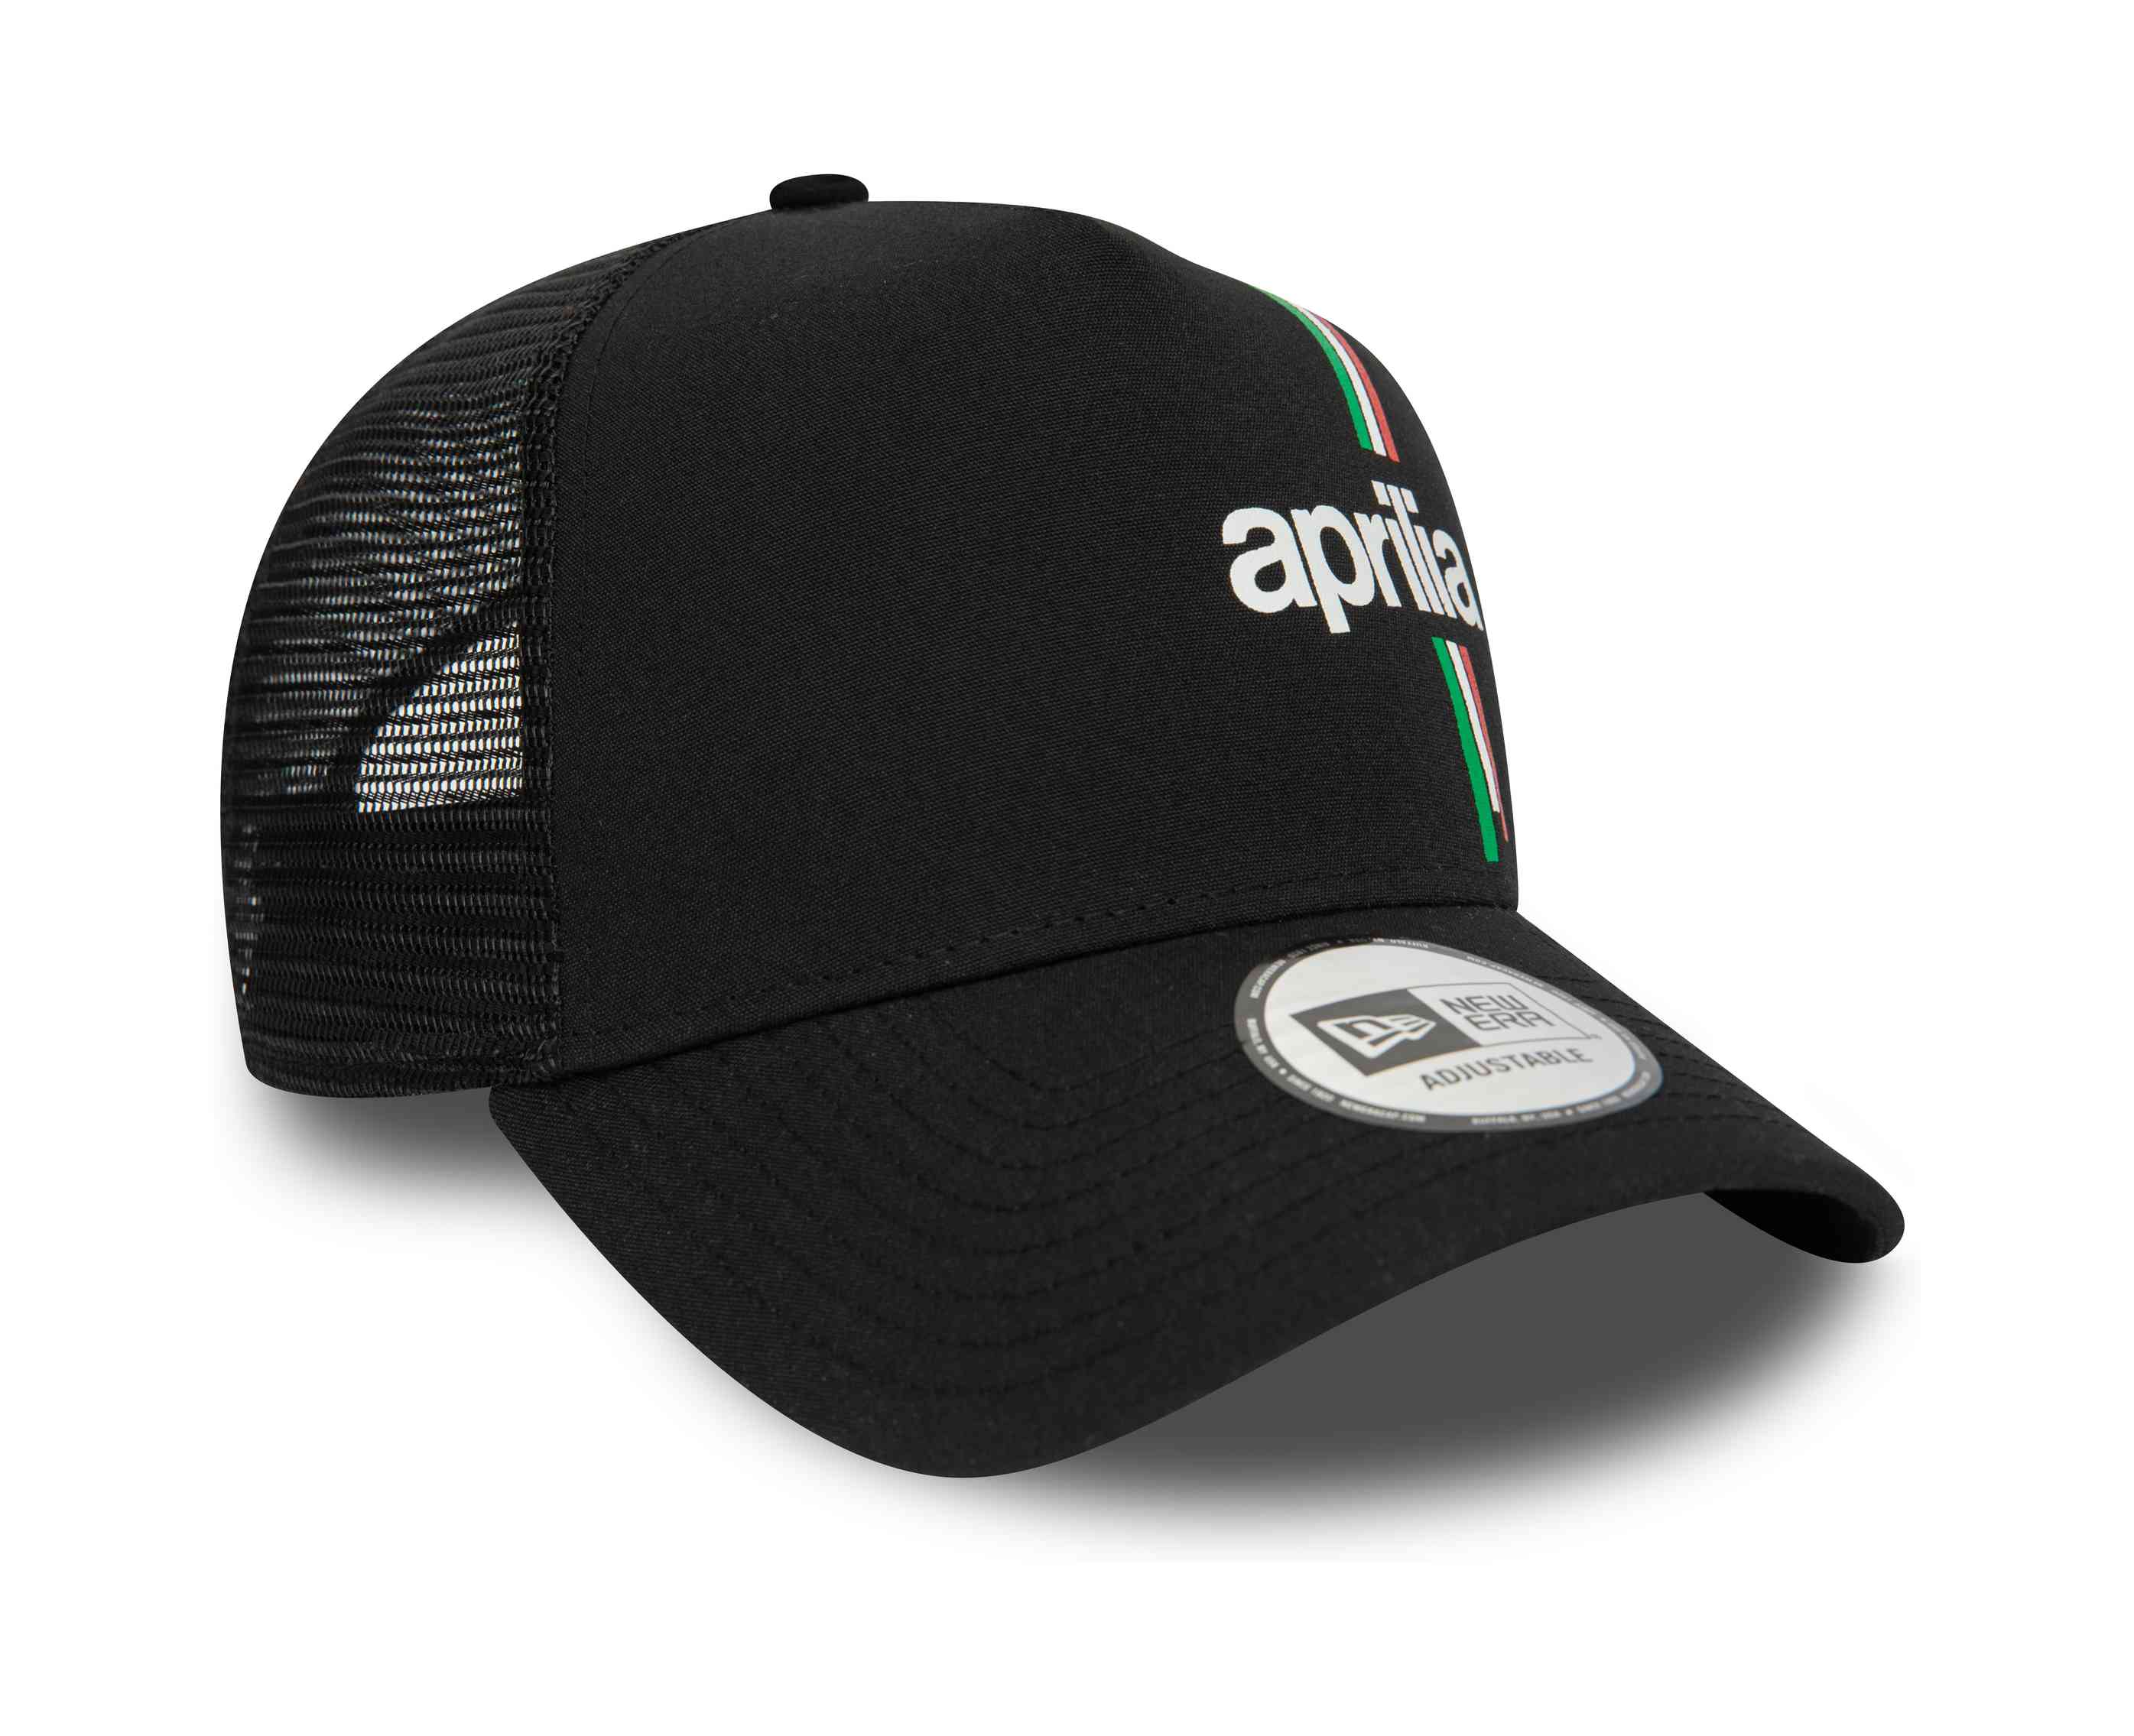 New Era - Aprilia Essential Trucker Snapback Cap